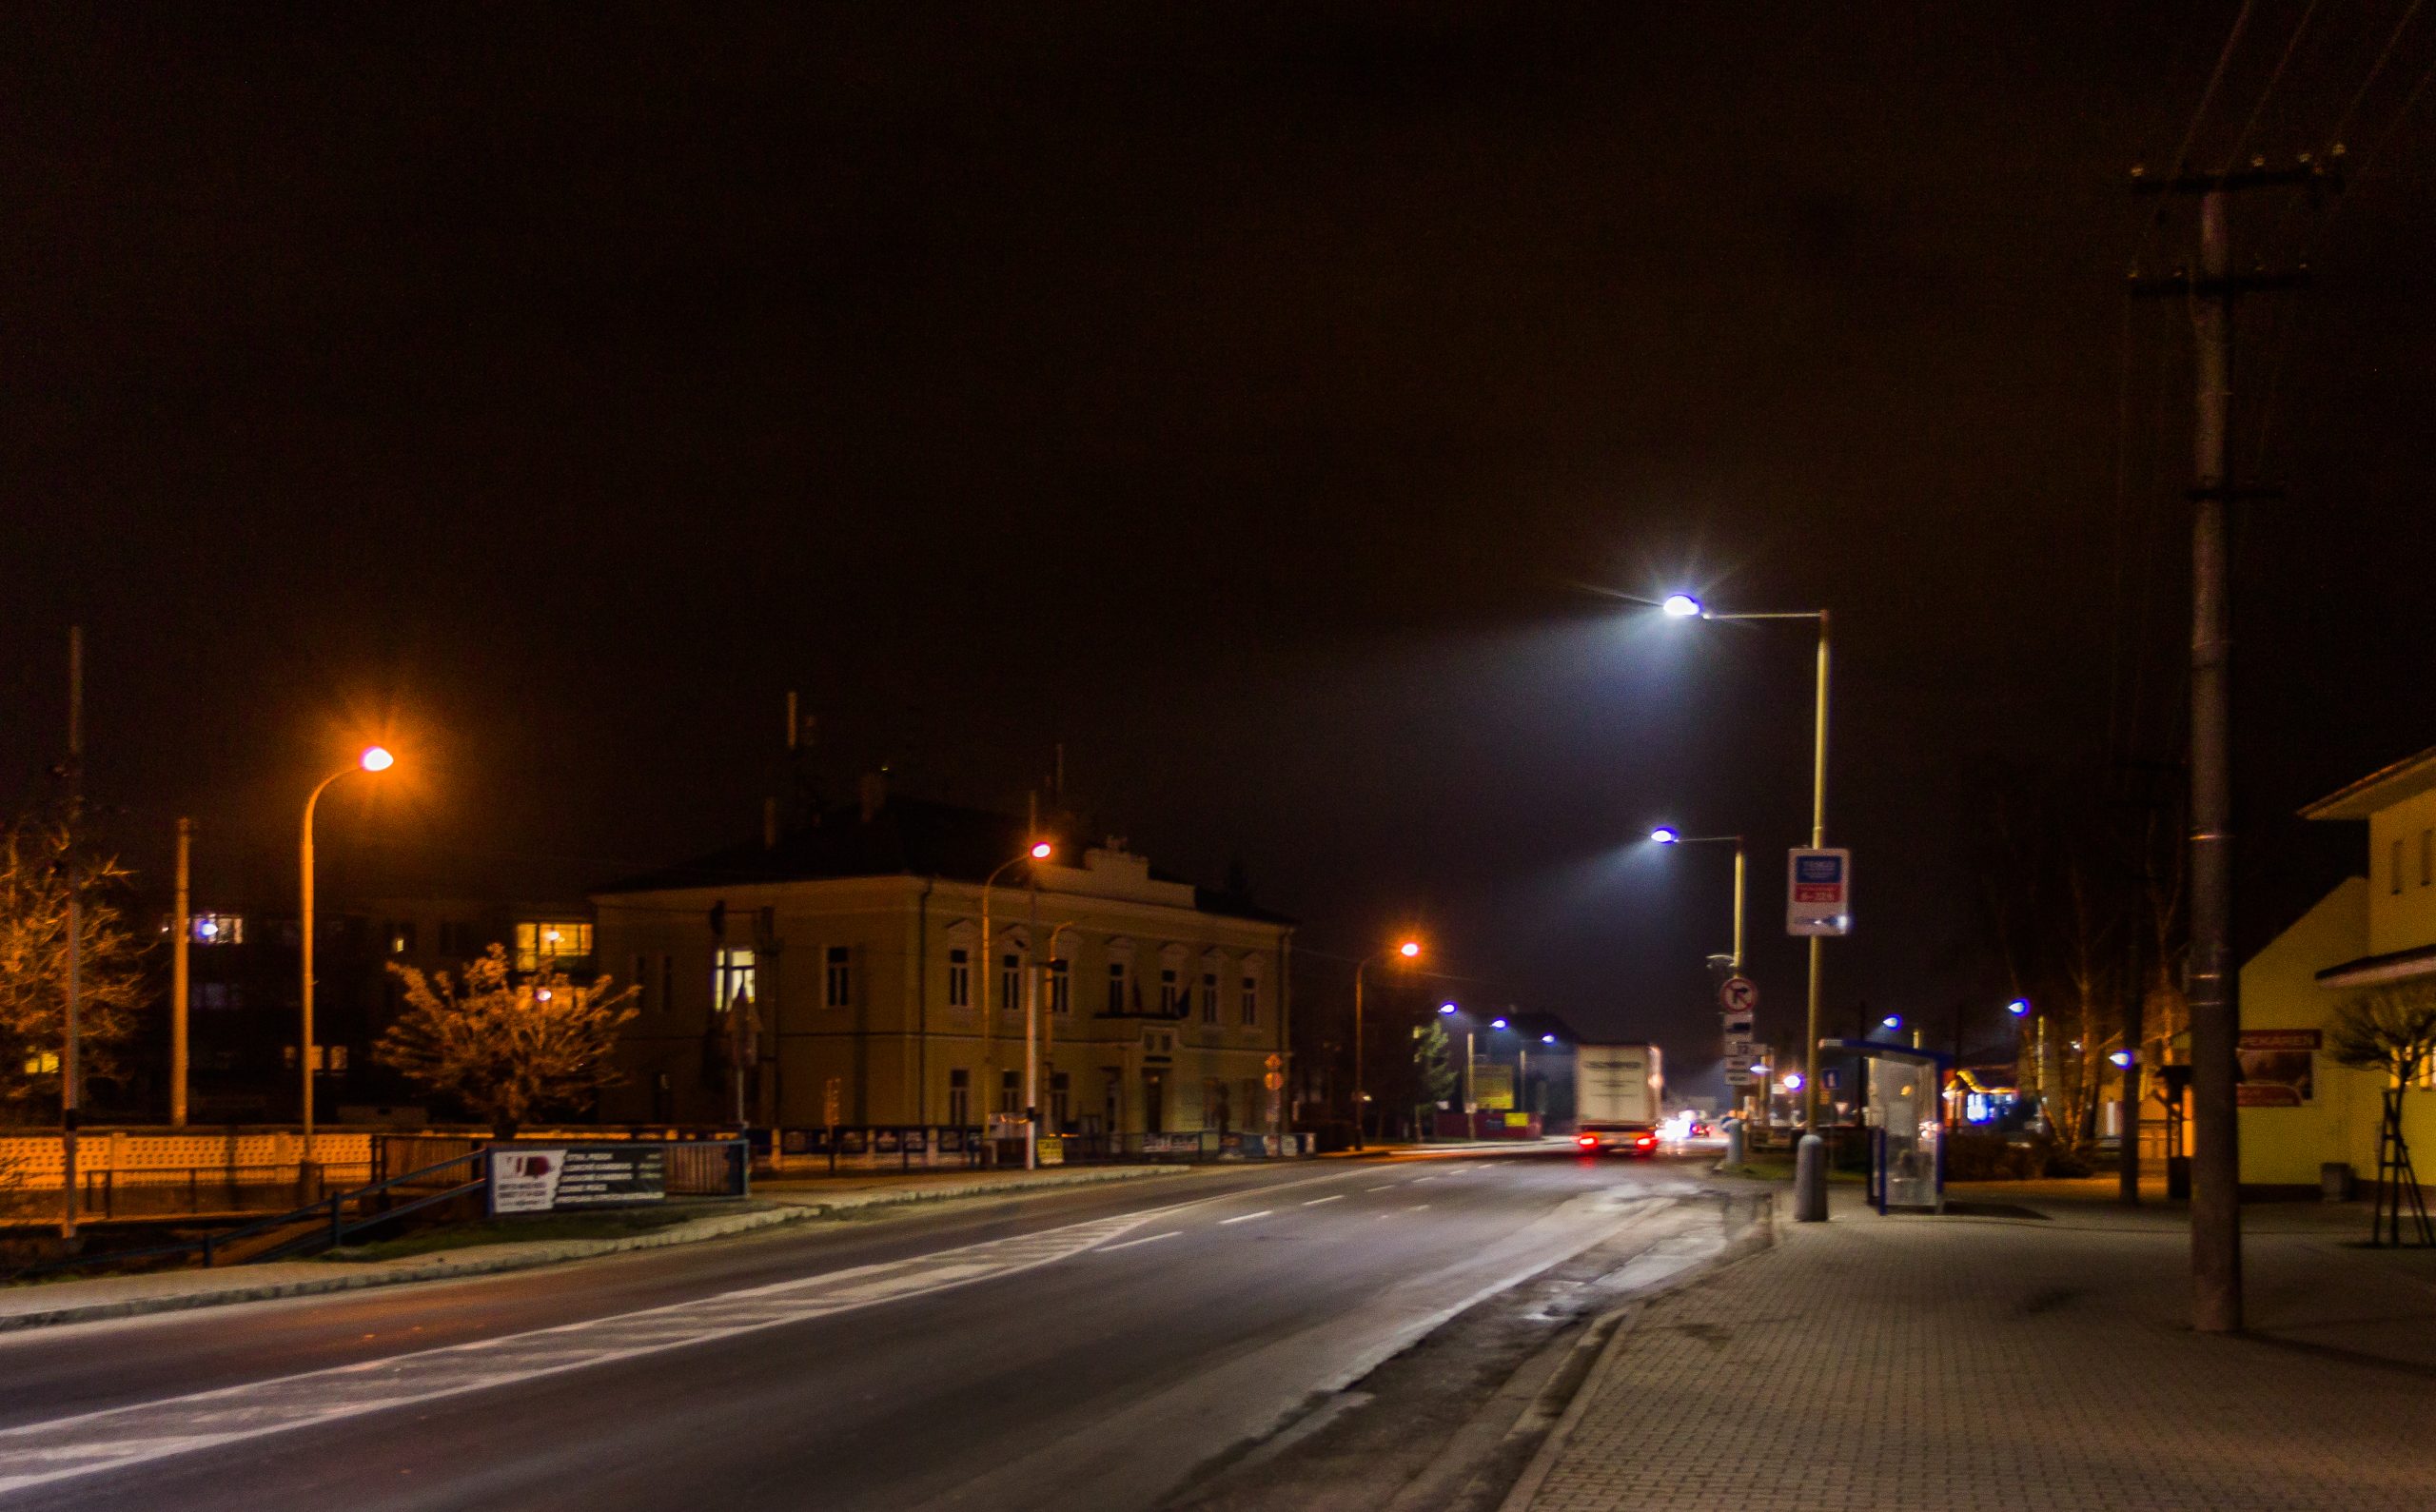 Night street in Trenčianska Teplá